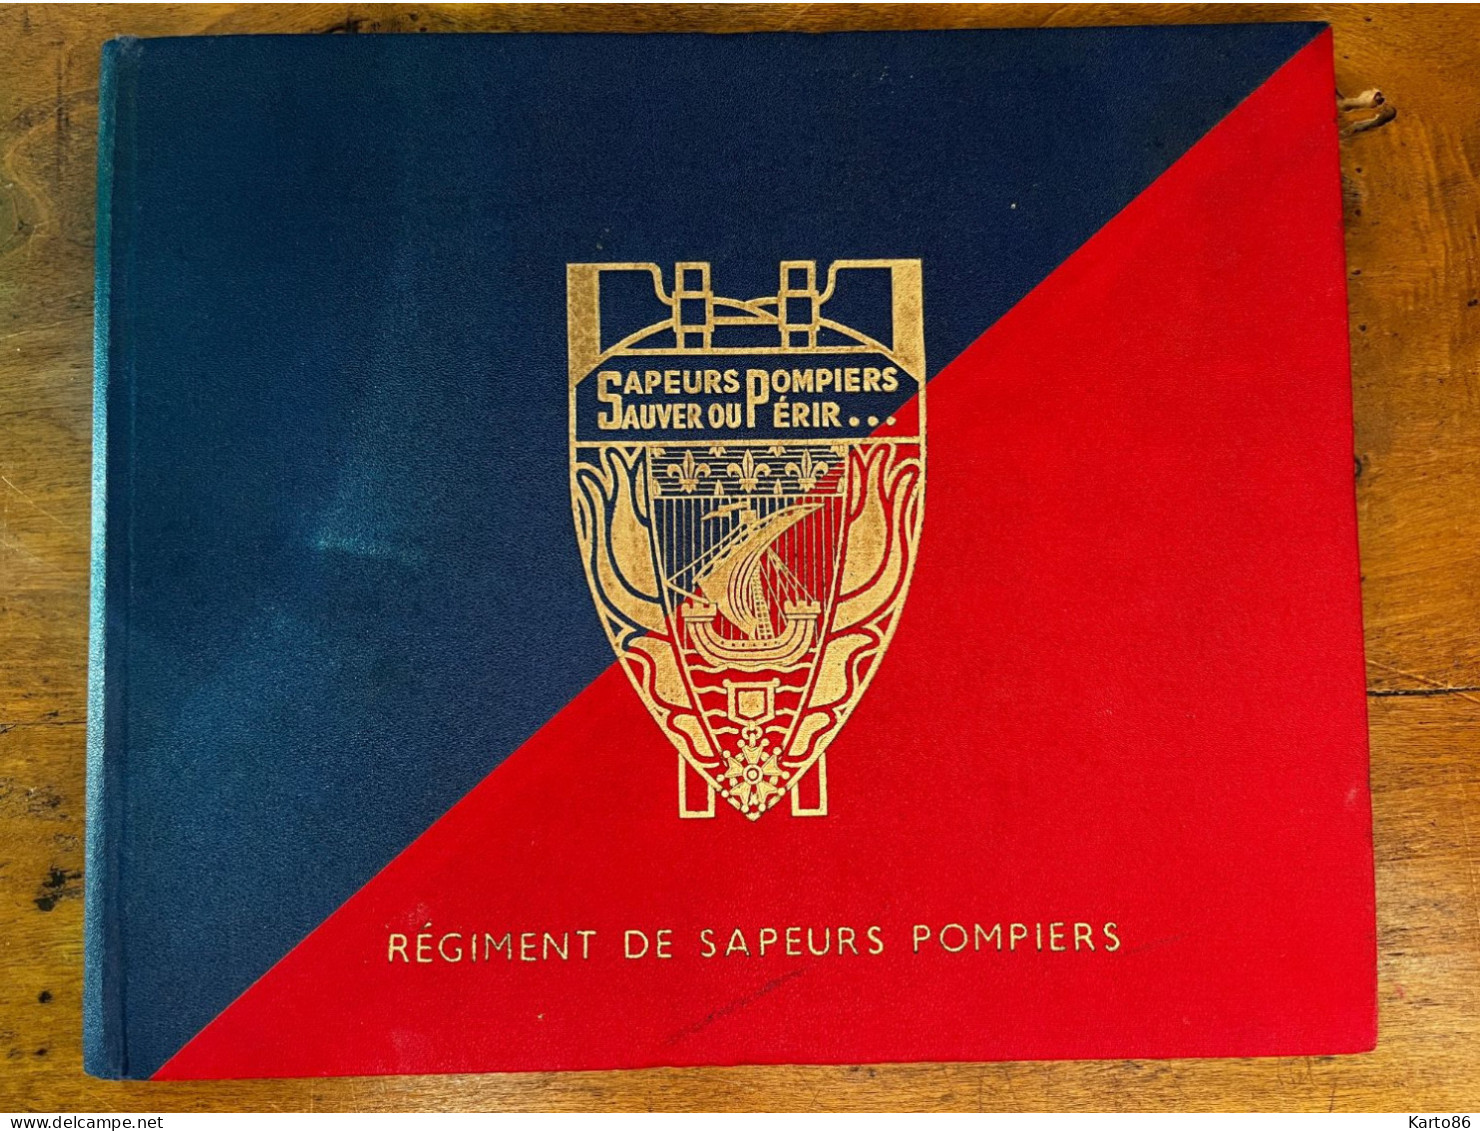 Régiment De Sapeurs Pompiers * Paris 1952 * Album 18 Pages De Photos * Sapeur Pompier Fireman * Studio Damrémont - Brandweer